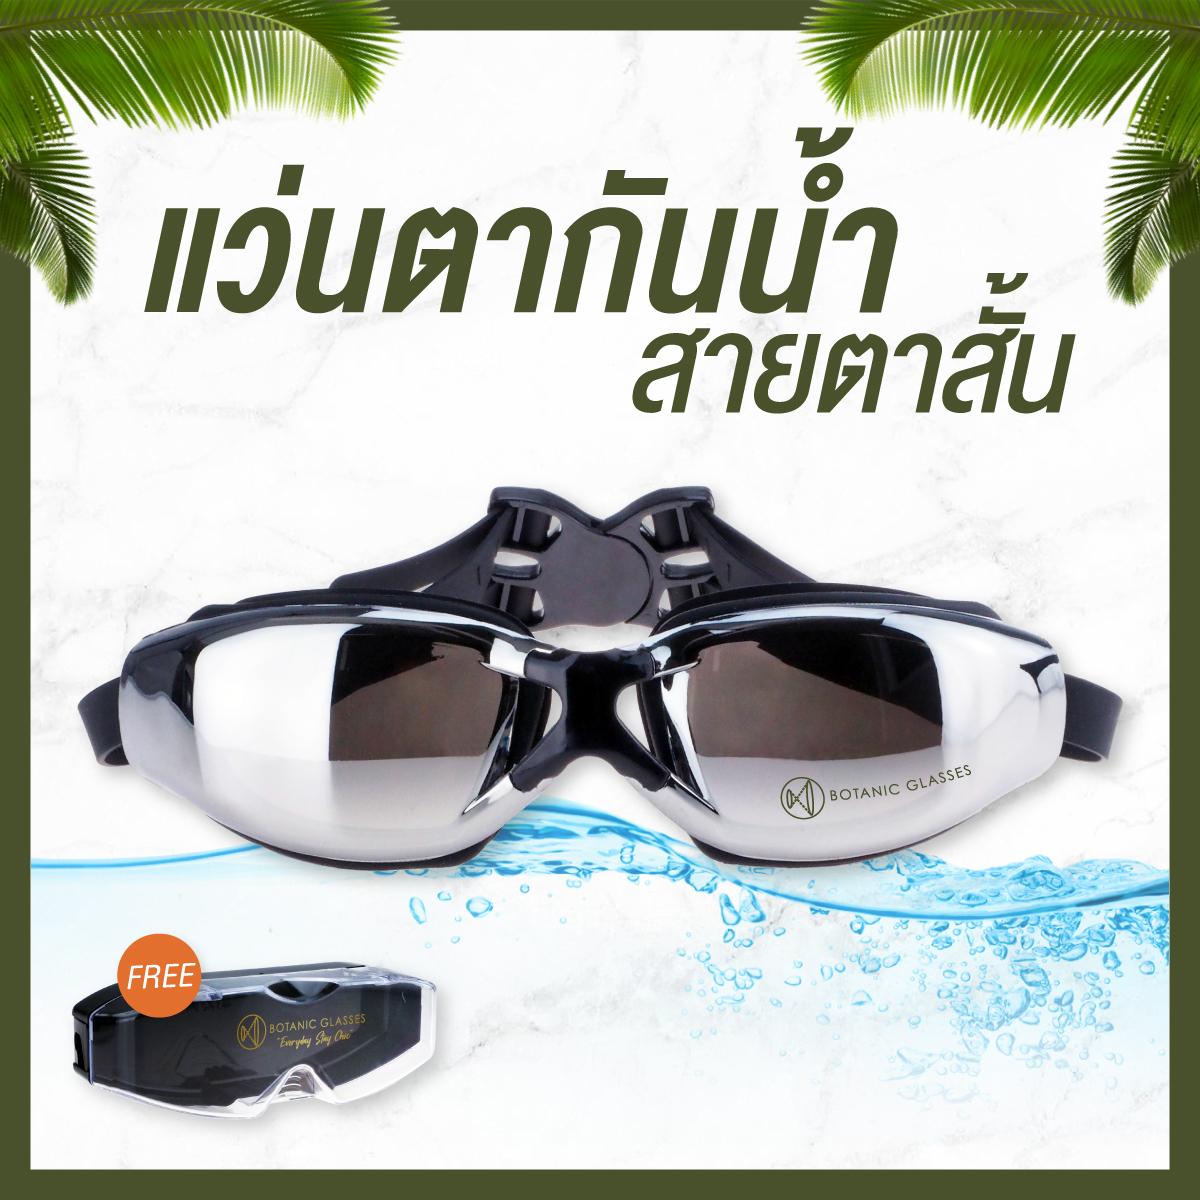 ข้อมูลเกี่ยวกับ แว่นกันน้ำ สายตาสั้น 150 ถึง 800 แว่นว่ายน้ำ ของแท้ Botanic Glasses กัน UV 99% แว่นตาว่ายน้ำ Free กล่องแว่น